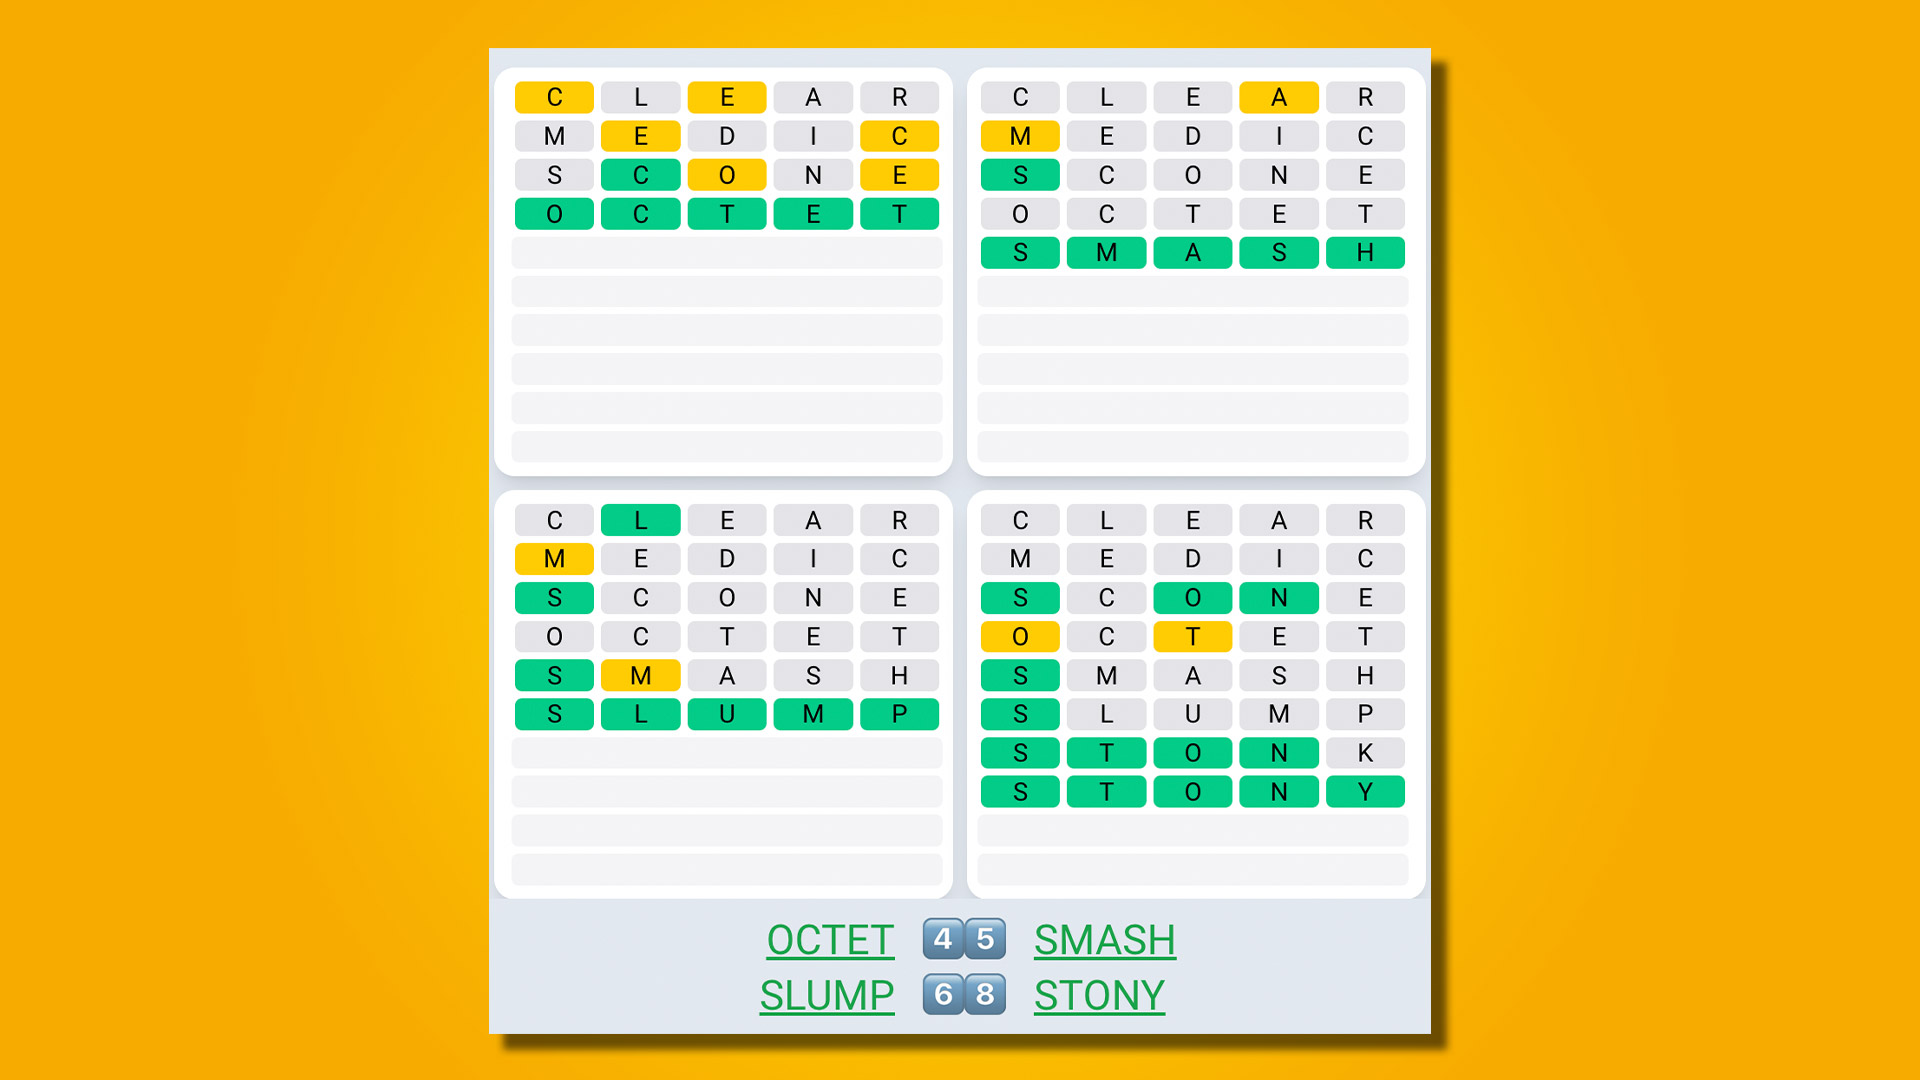 Quordle-Tagessequenzantworten für Spiel 473 auf gelbem Hintergrund